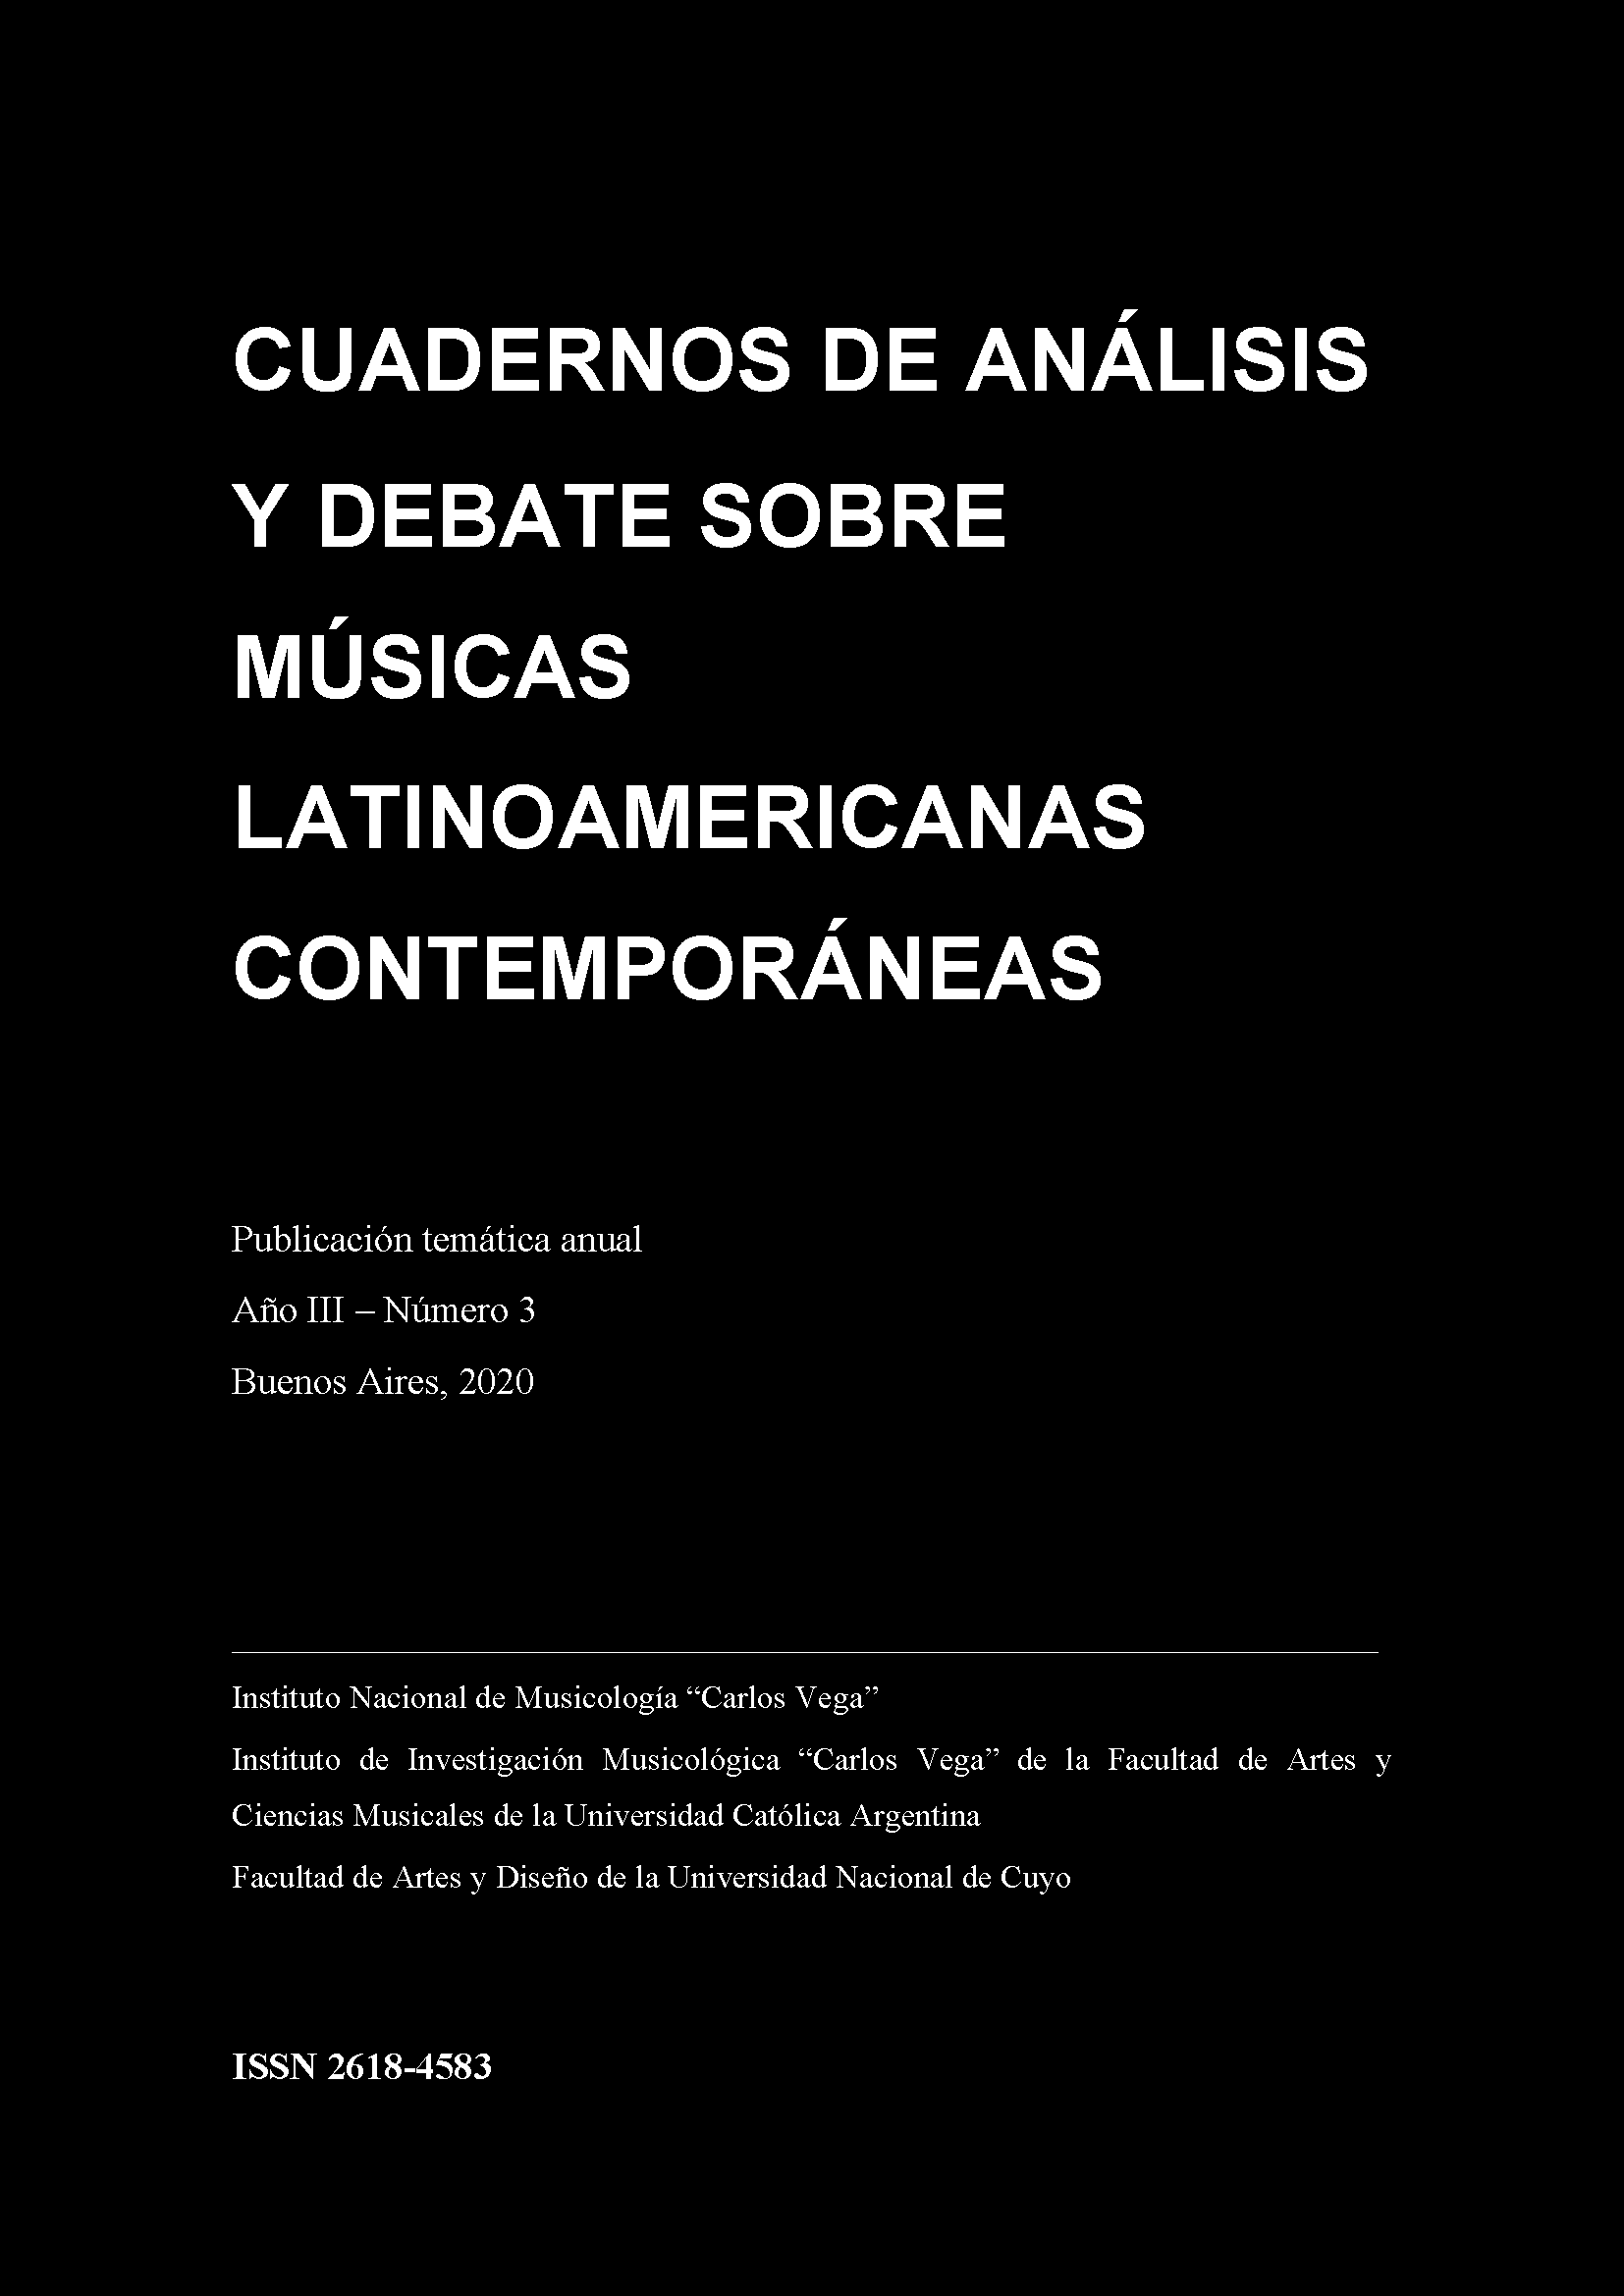 Cuadernos de Análisis y Debate sobre Músicas Latinoamericanas Contemporáneas 3 (2020), 240-243. ISSN 2618-4583